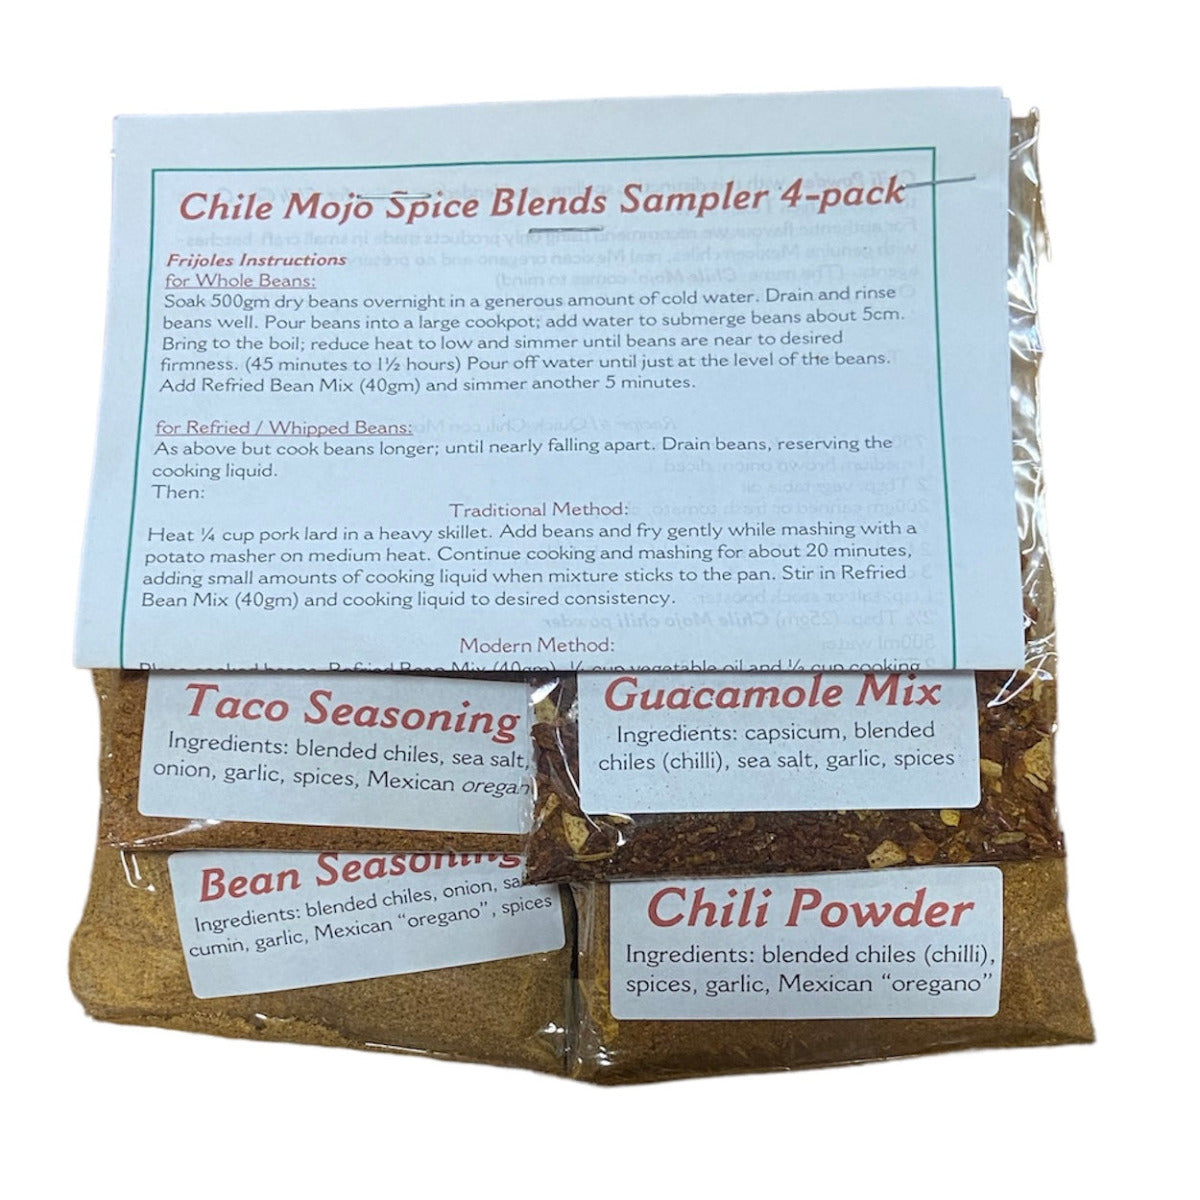 Chile Mojo Spice Blends Sampler